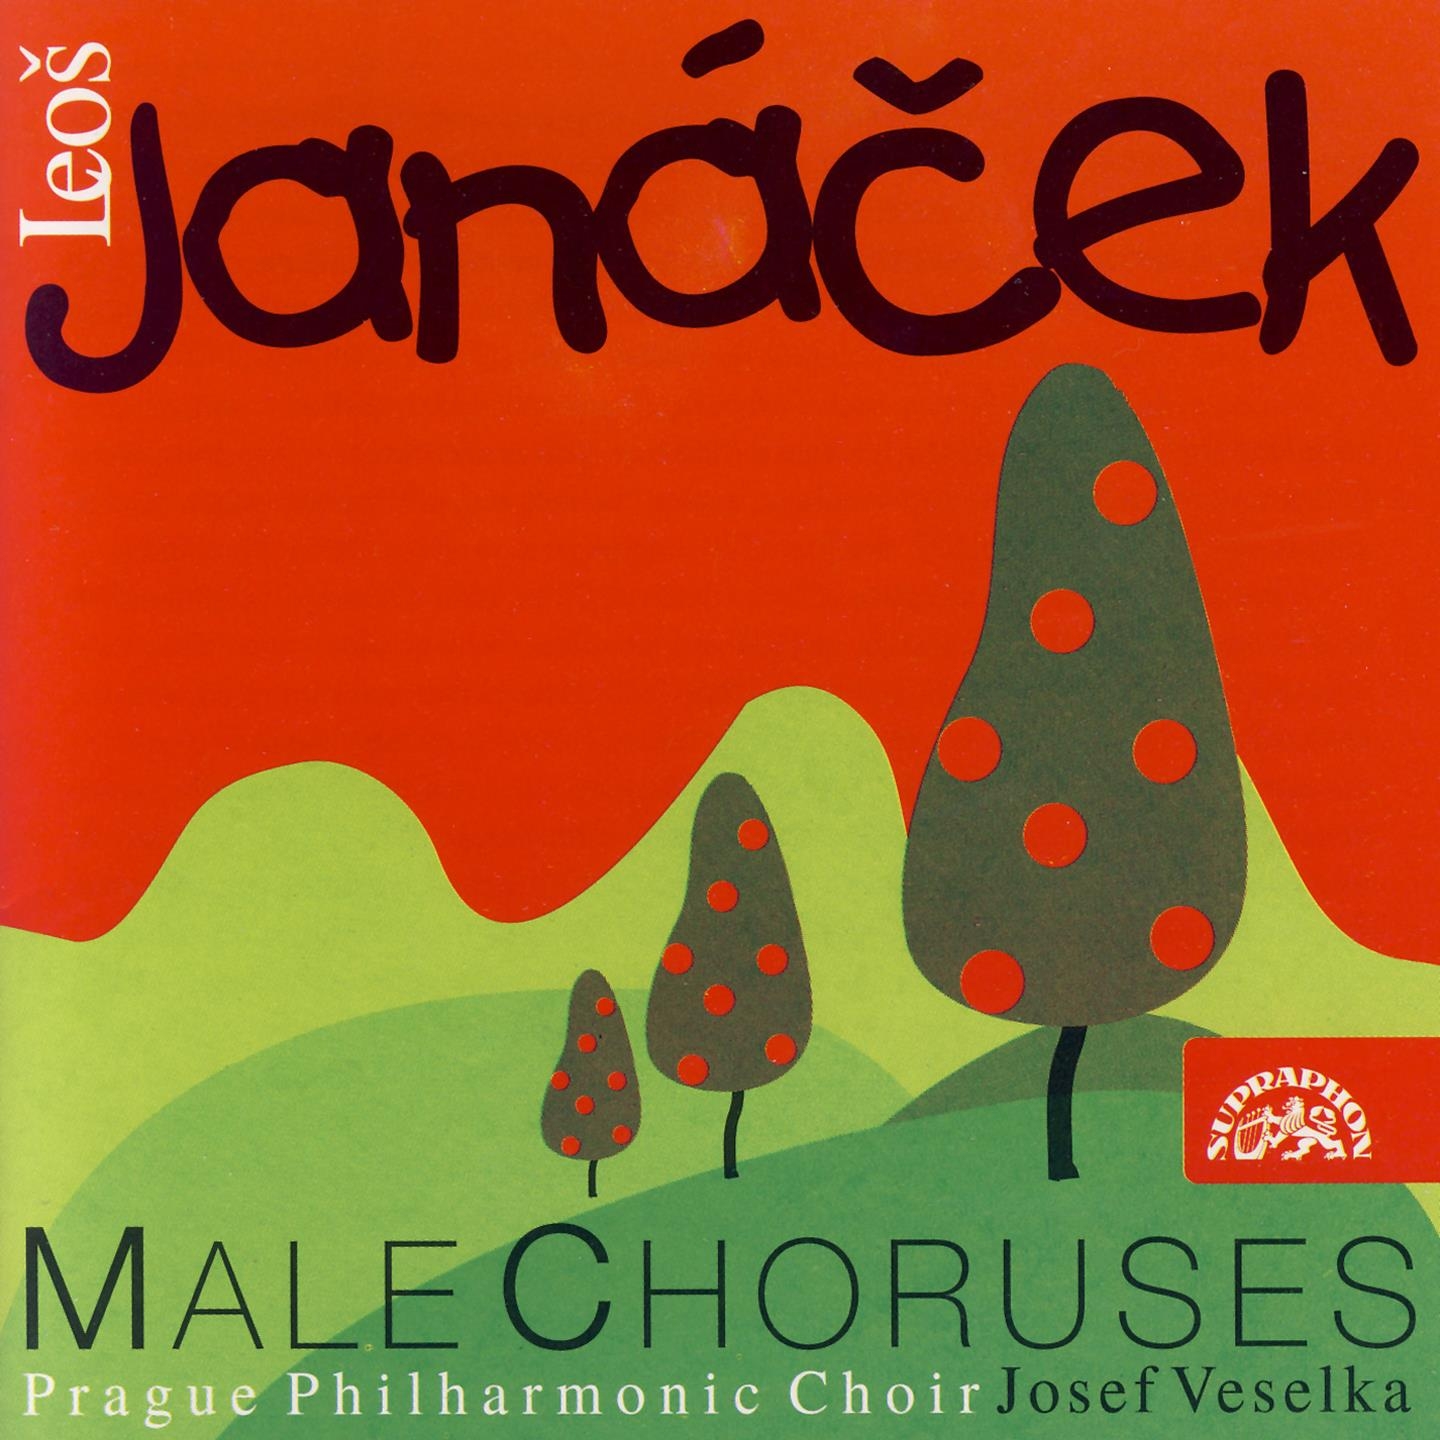 Jana ek: Male Choruses